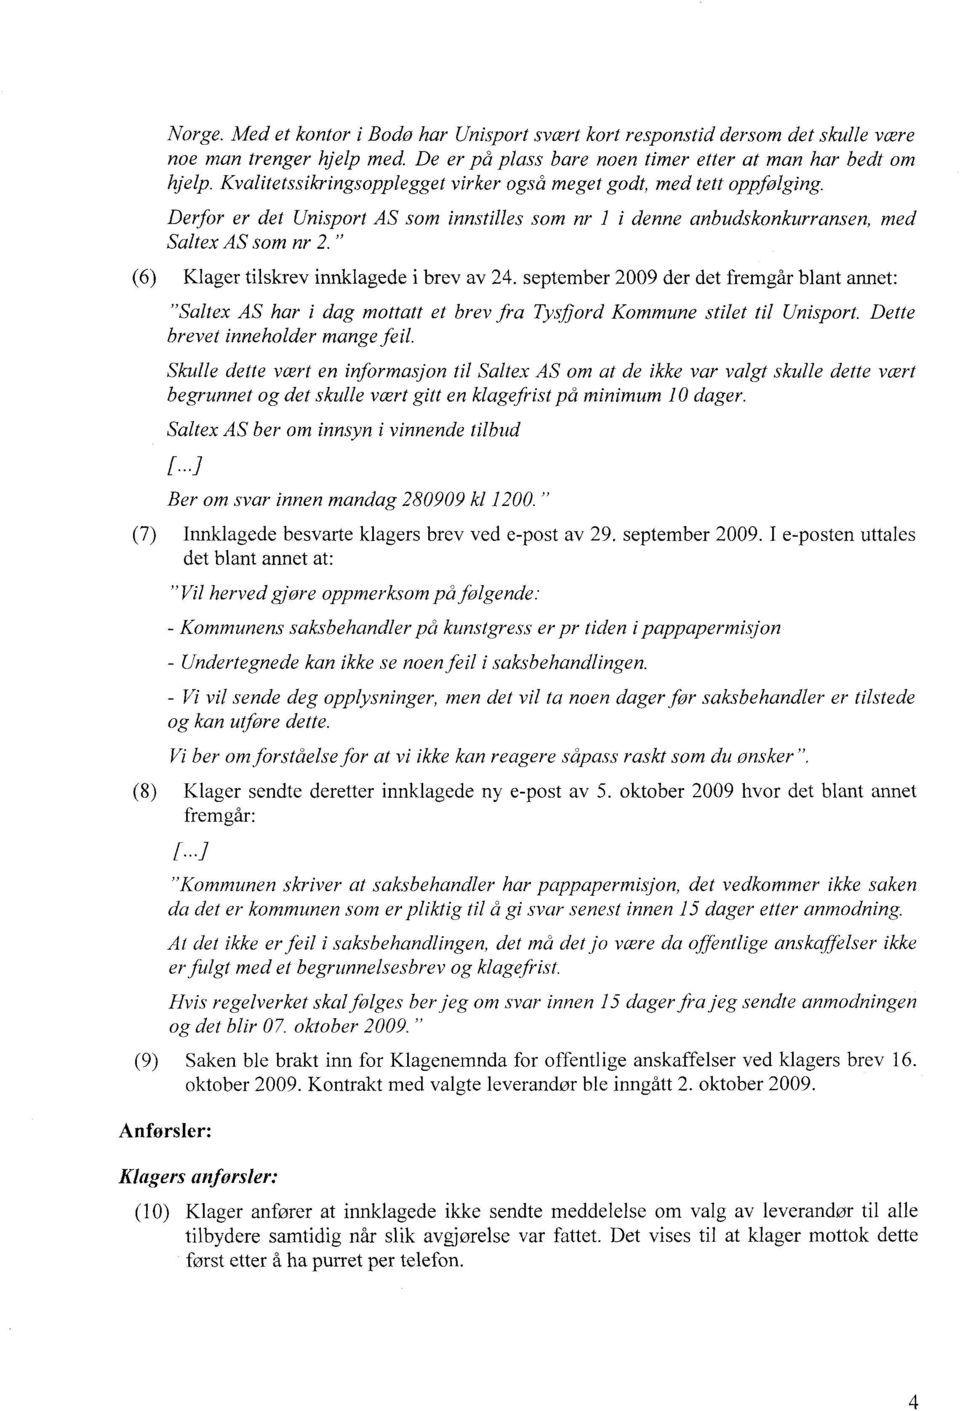 " (6) Klager tilskrev innklagede i brev av 24. september 2009 der det fremgår blant annet: "Saltex AS har i dag mottatt et brev fra Tysflord Kommune stilet til Unisport.